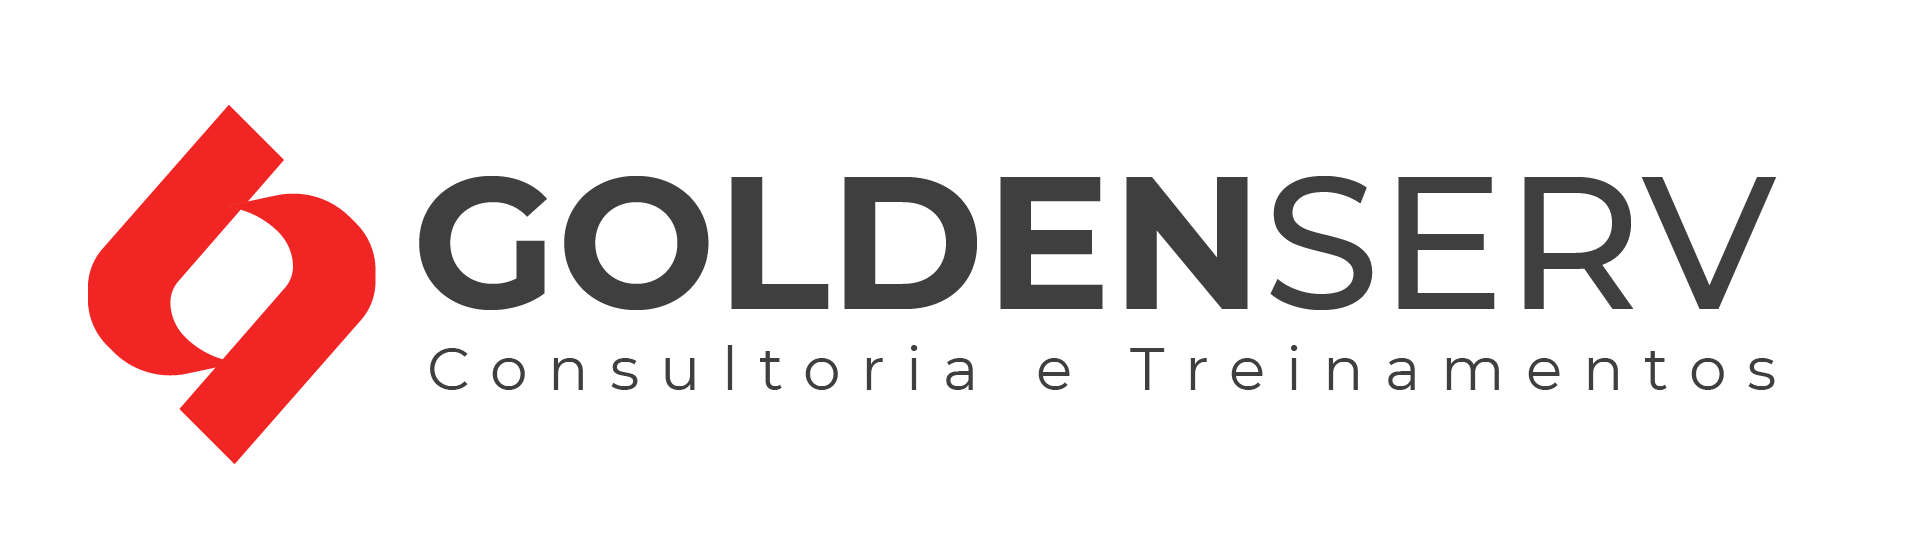 Golden Serv Consultoria e Treinamentos